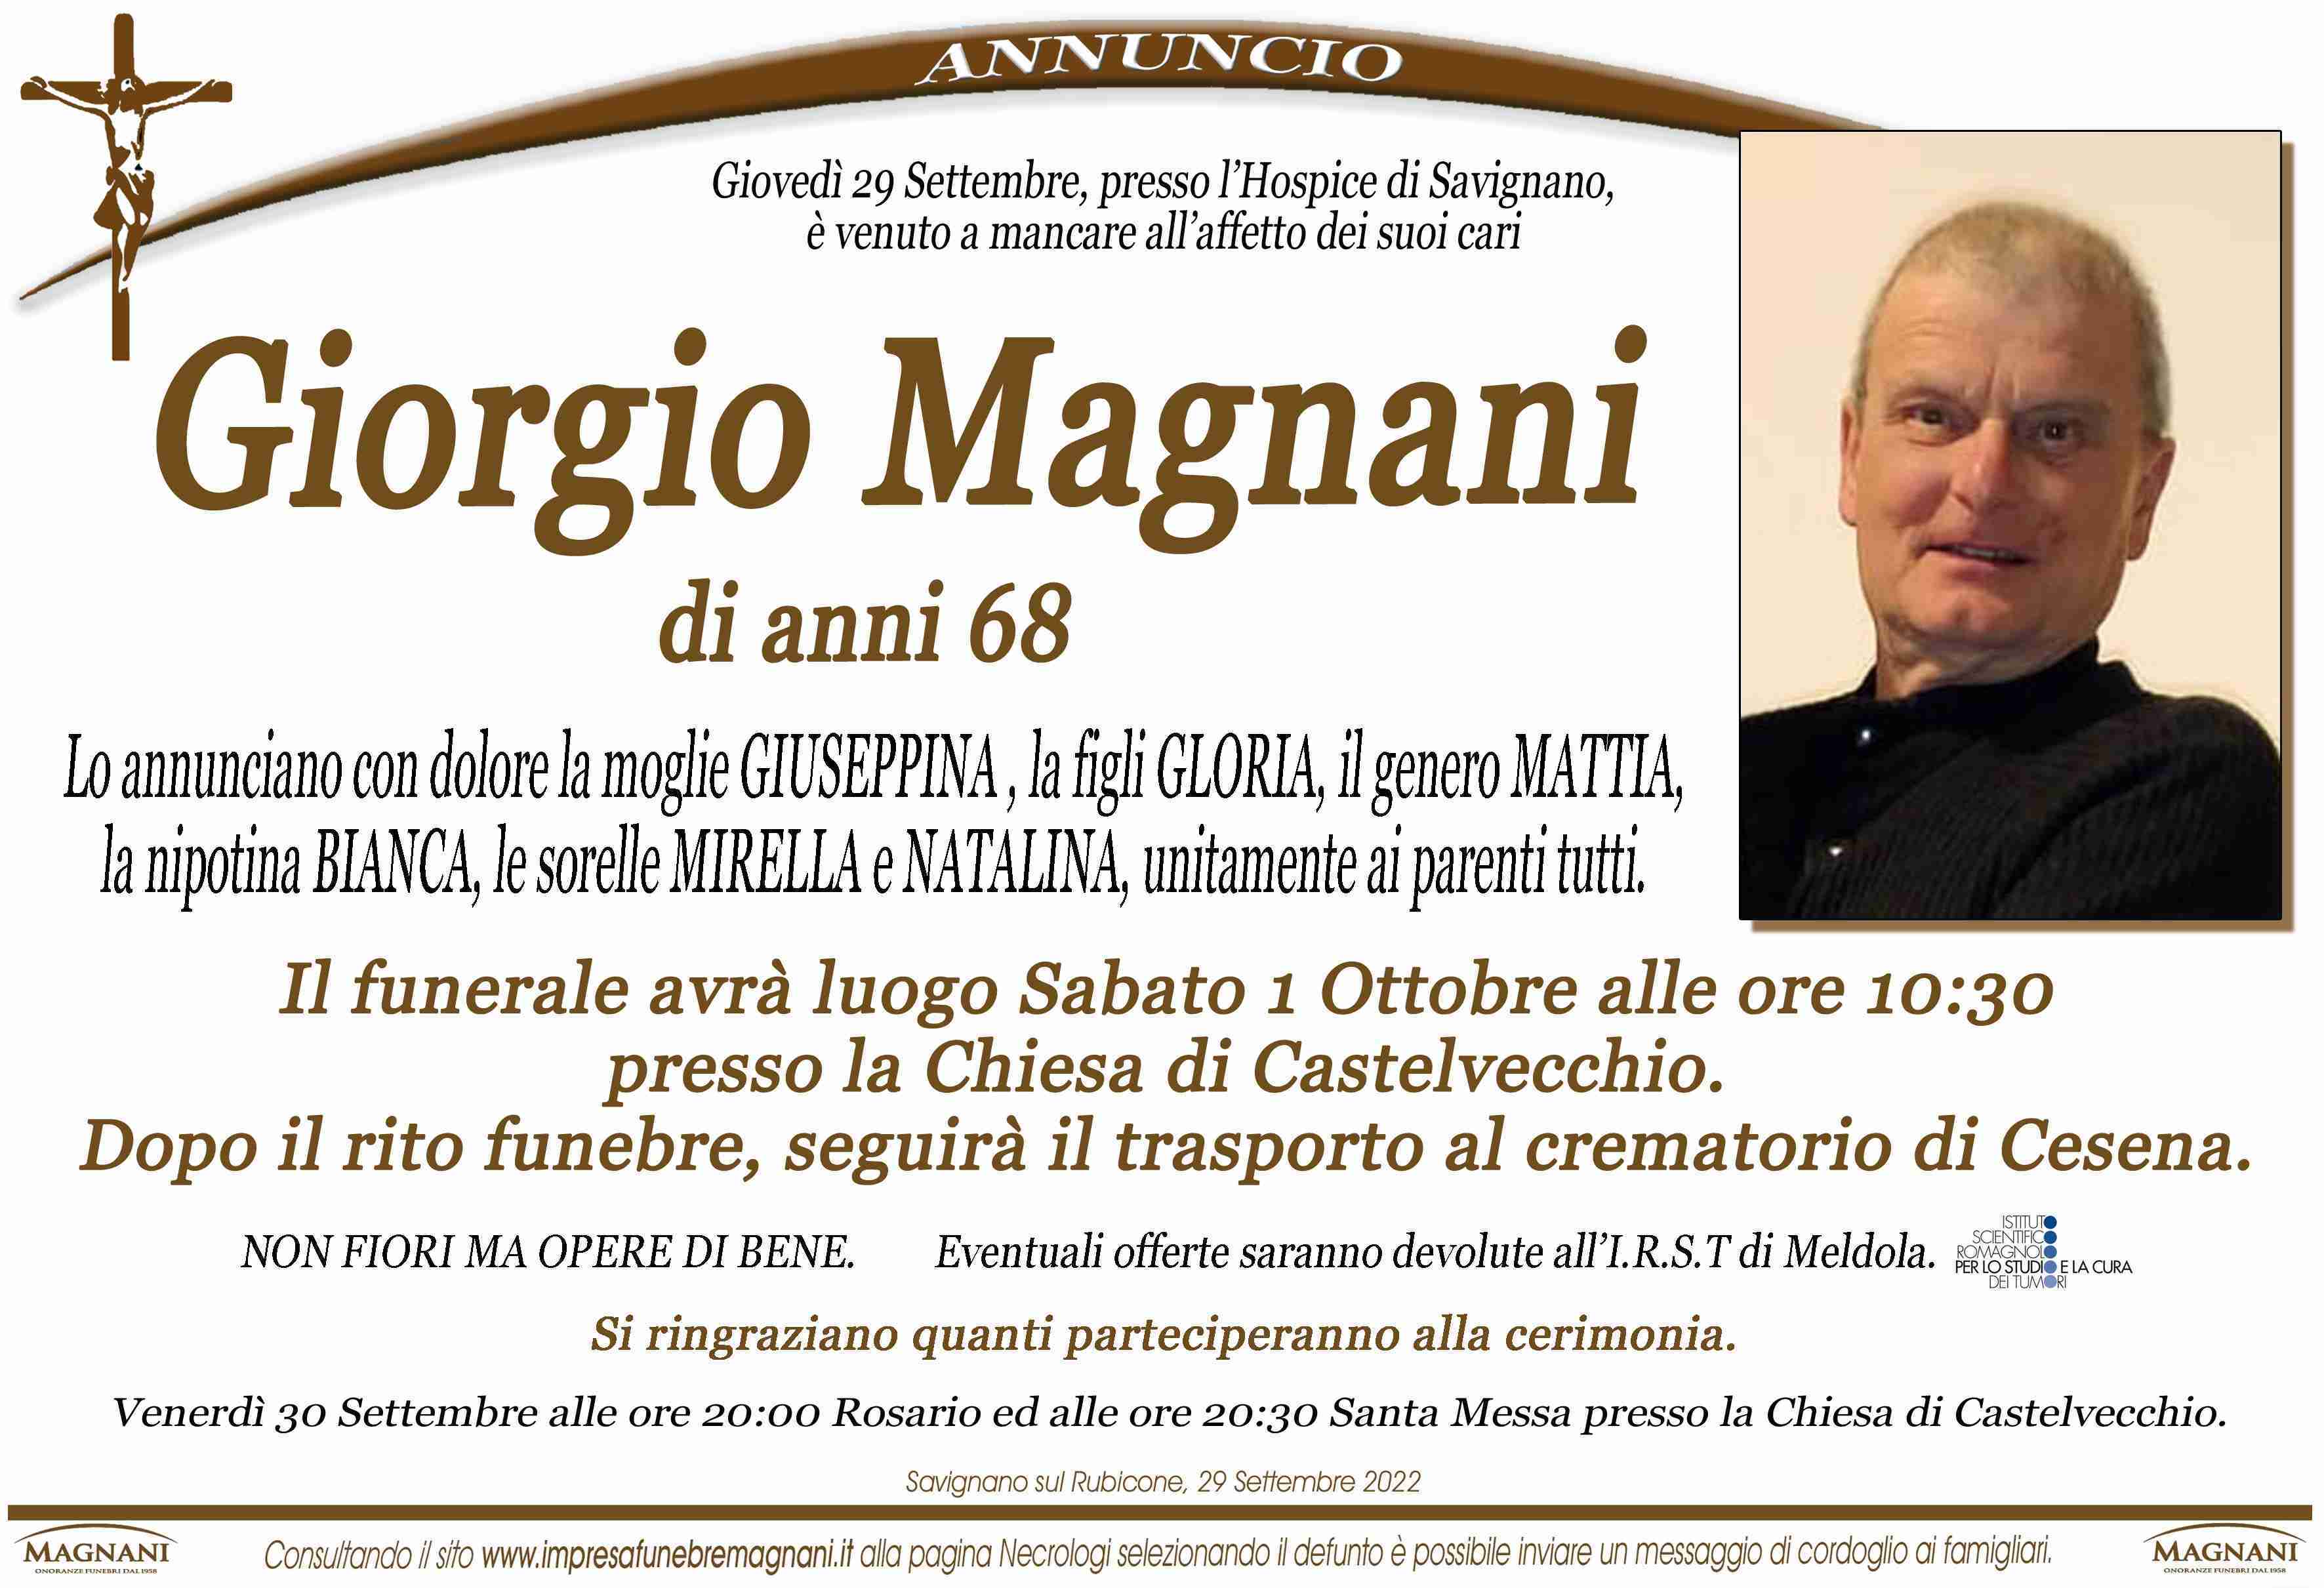 Giorgio Magnani